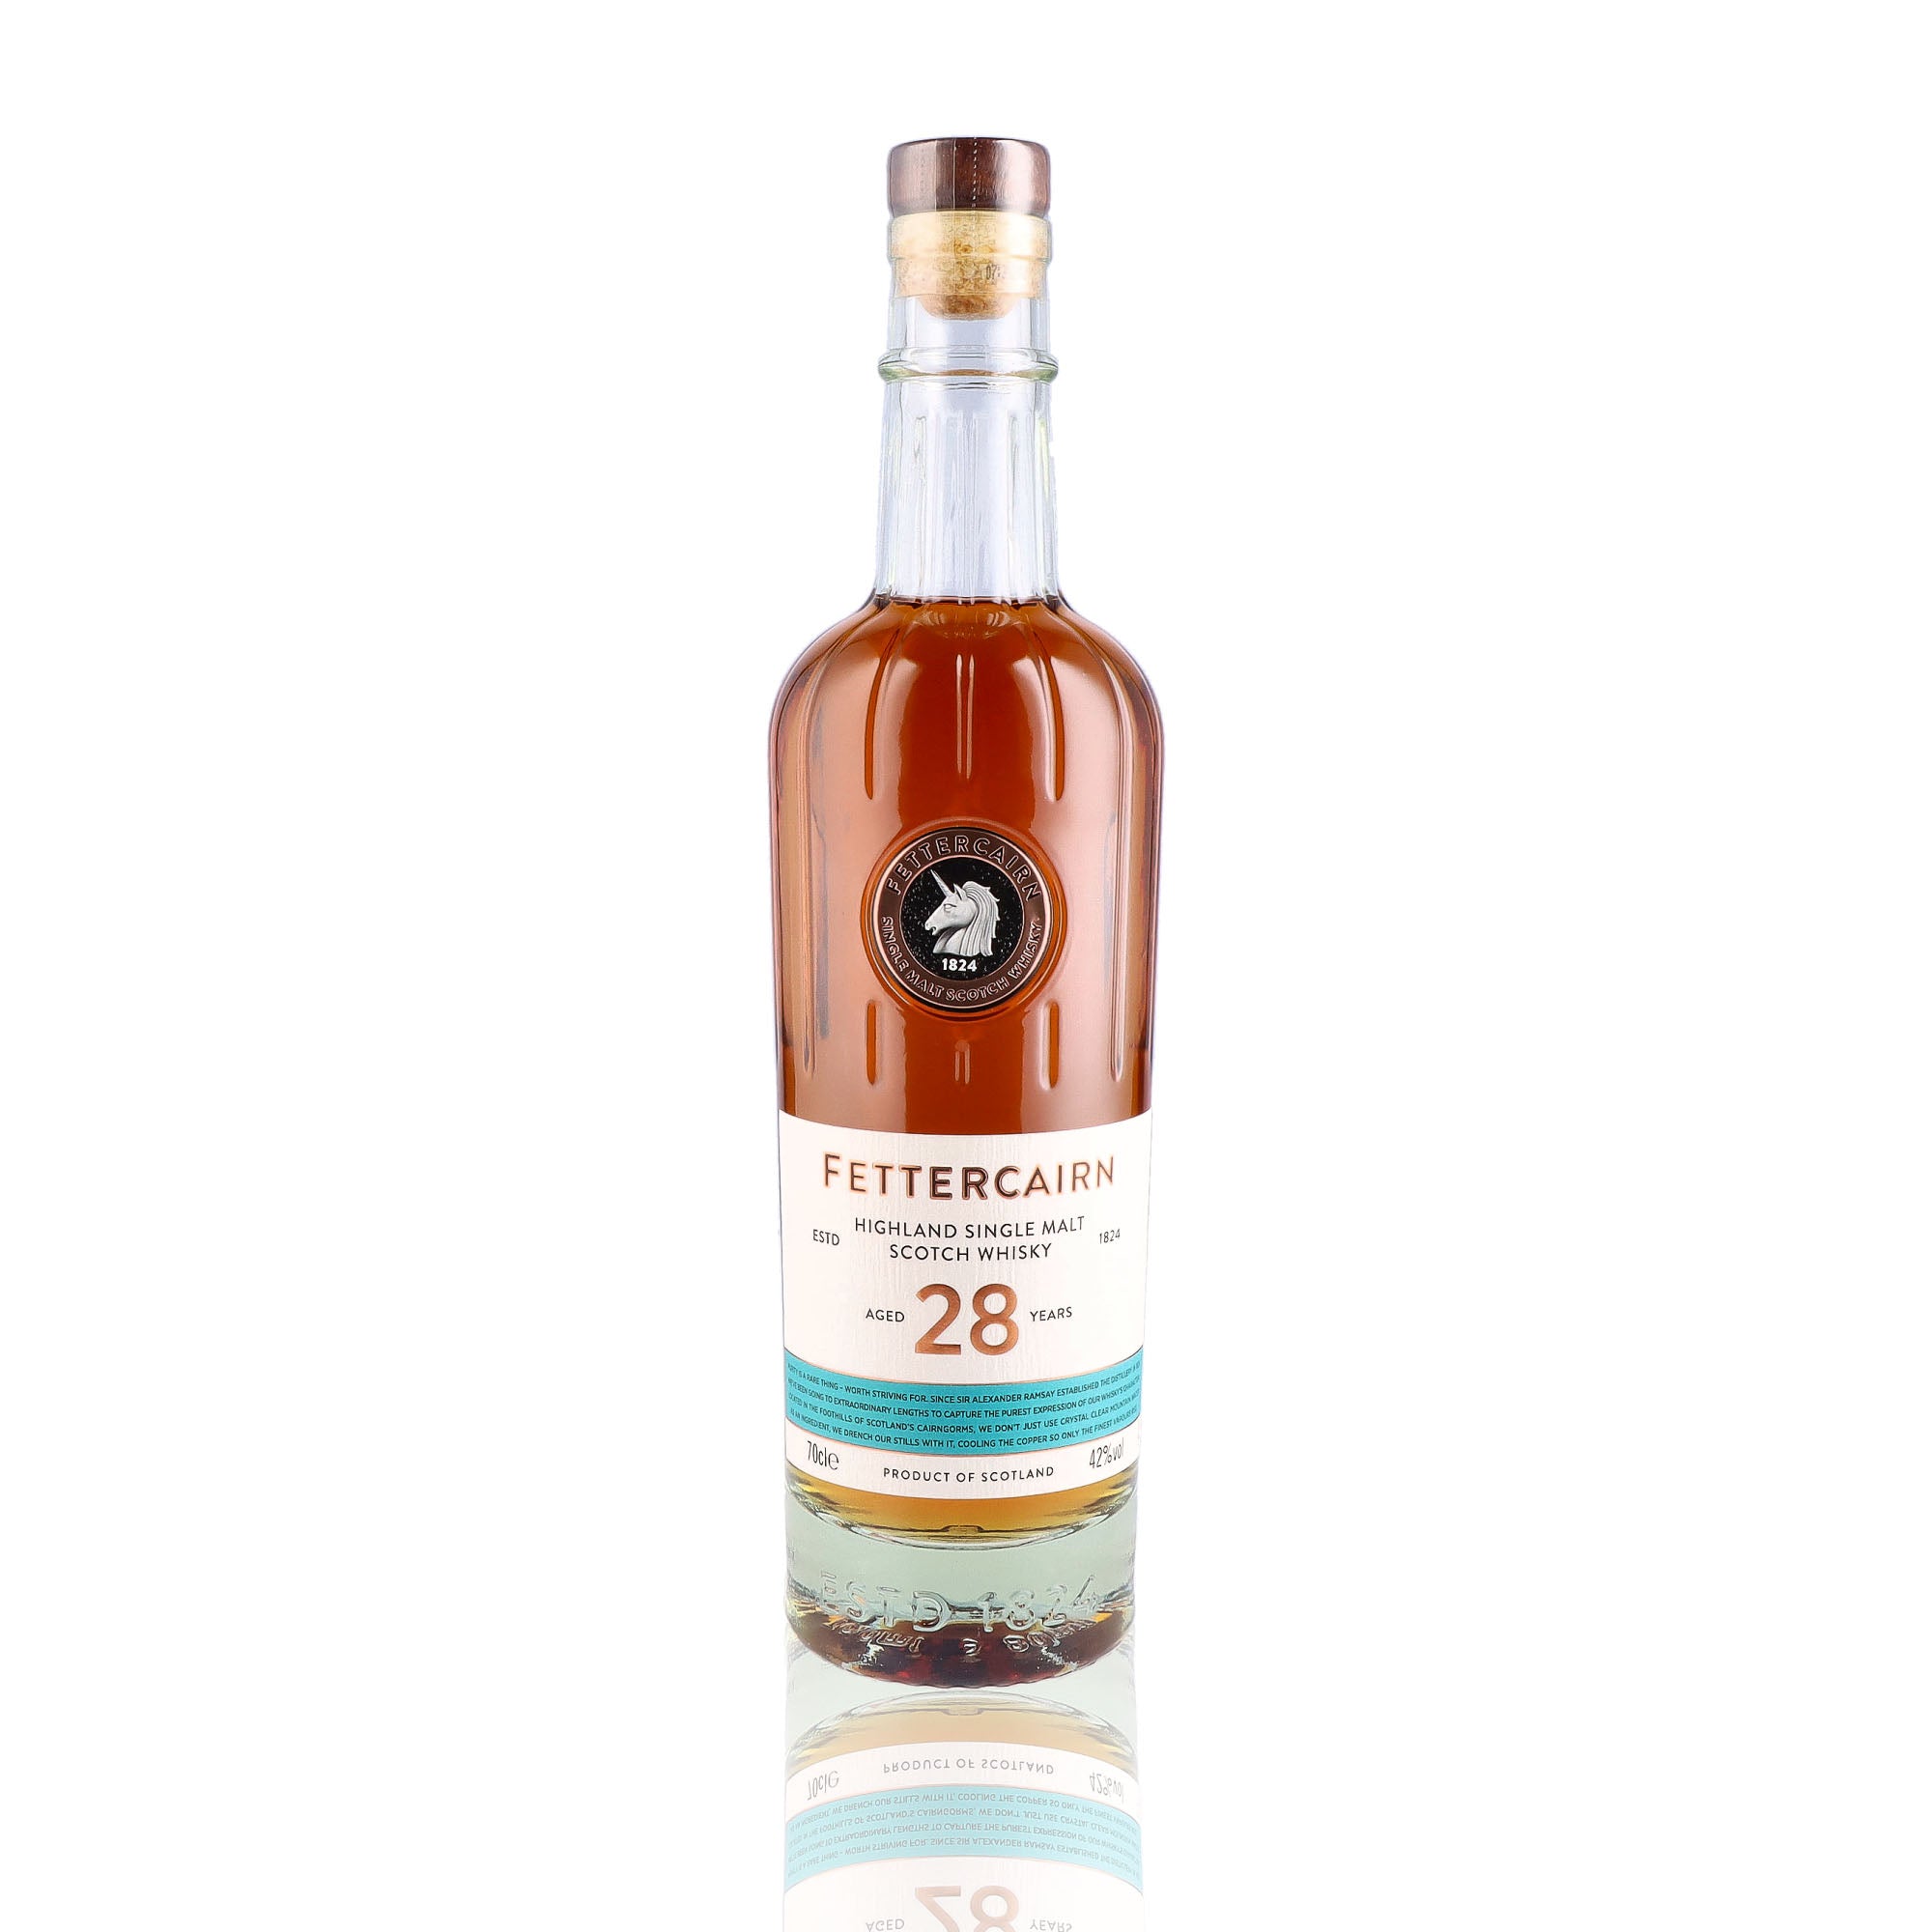 Une bouteille de Scotch Whisky Single Malt de la marque Fettercairn, 28 ans d'âge